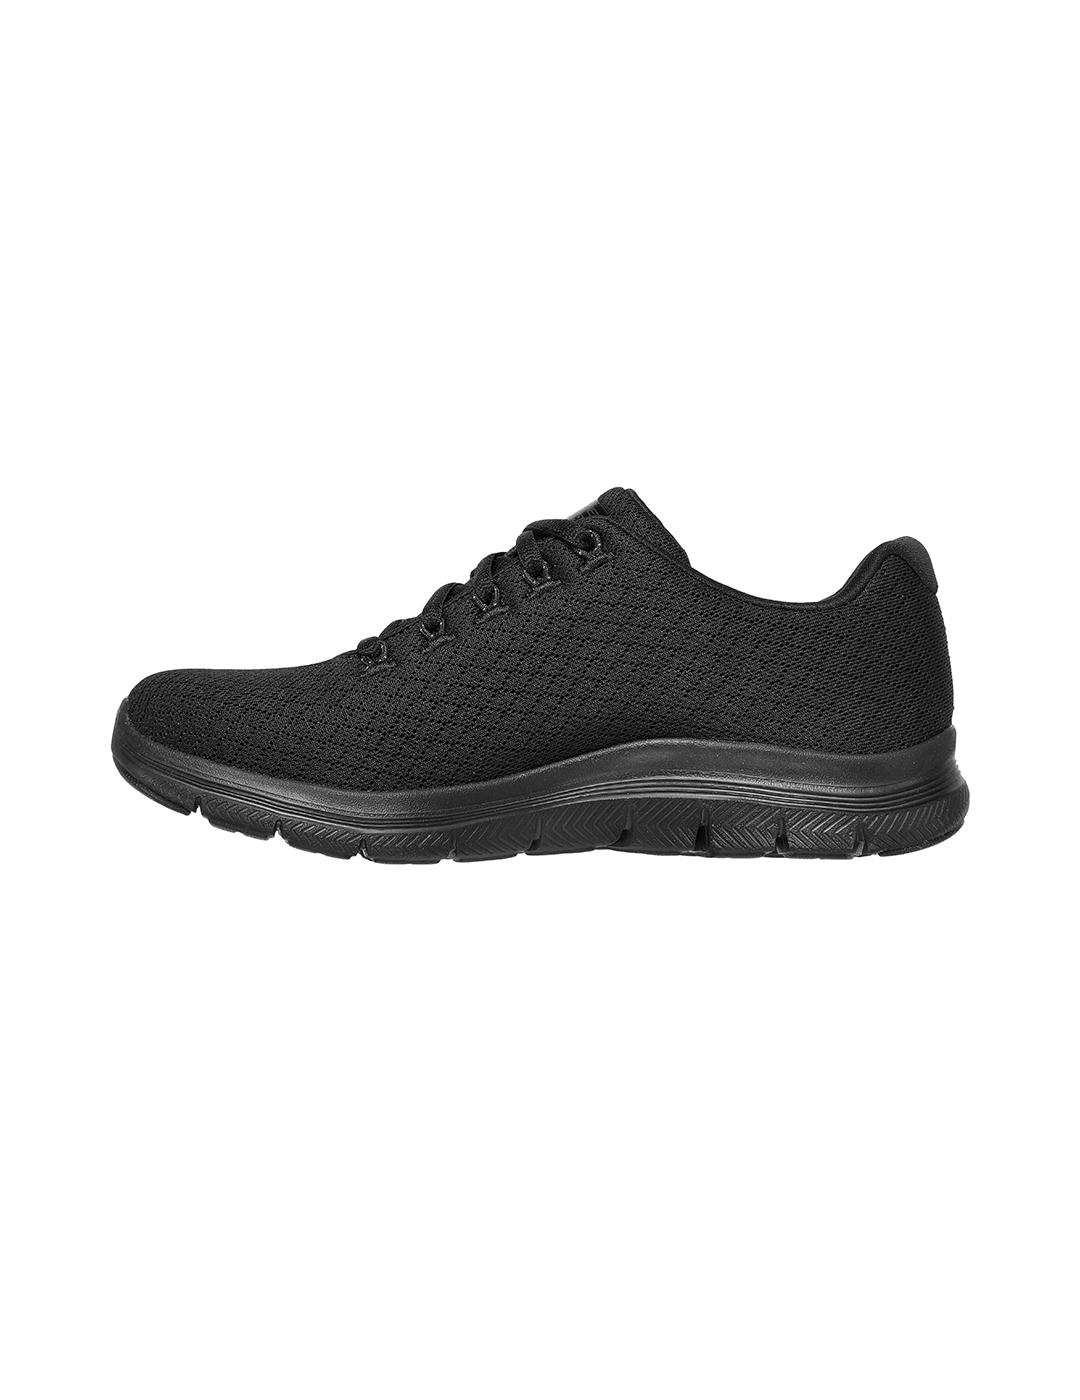 Zapatillas Skechers Flex Appeal 4.0 color negro para mujer